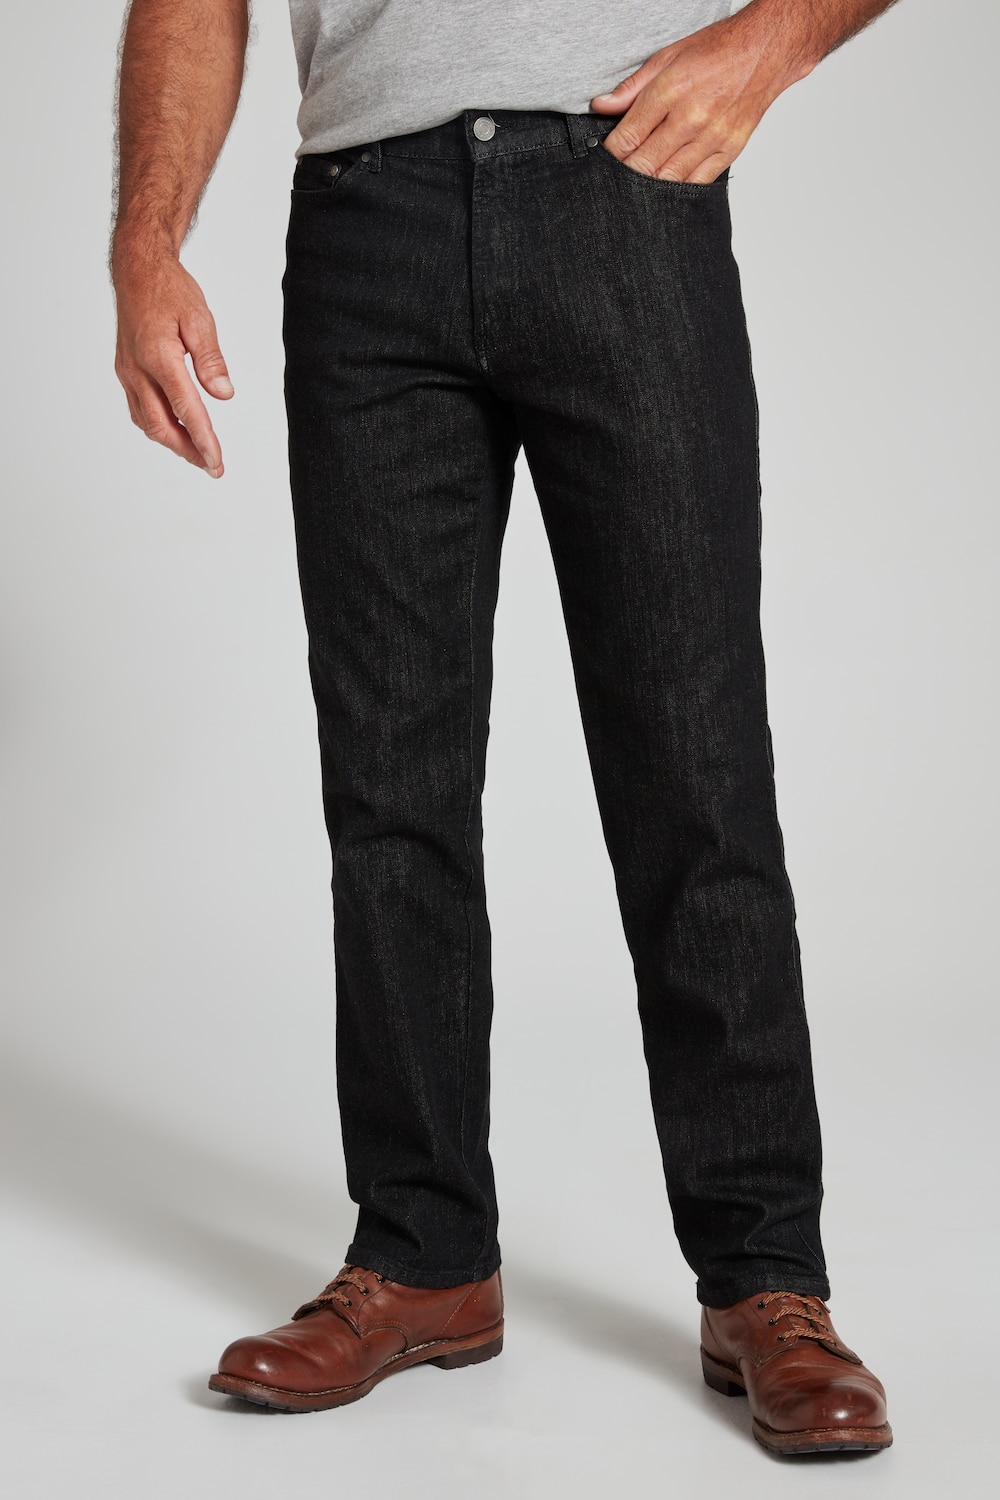 Grote Maten traveller jeans, Heren, zwart, Maat: 52, Katoen, JP1880